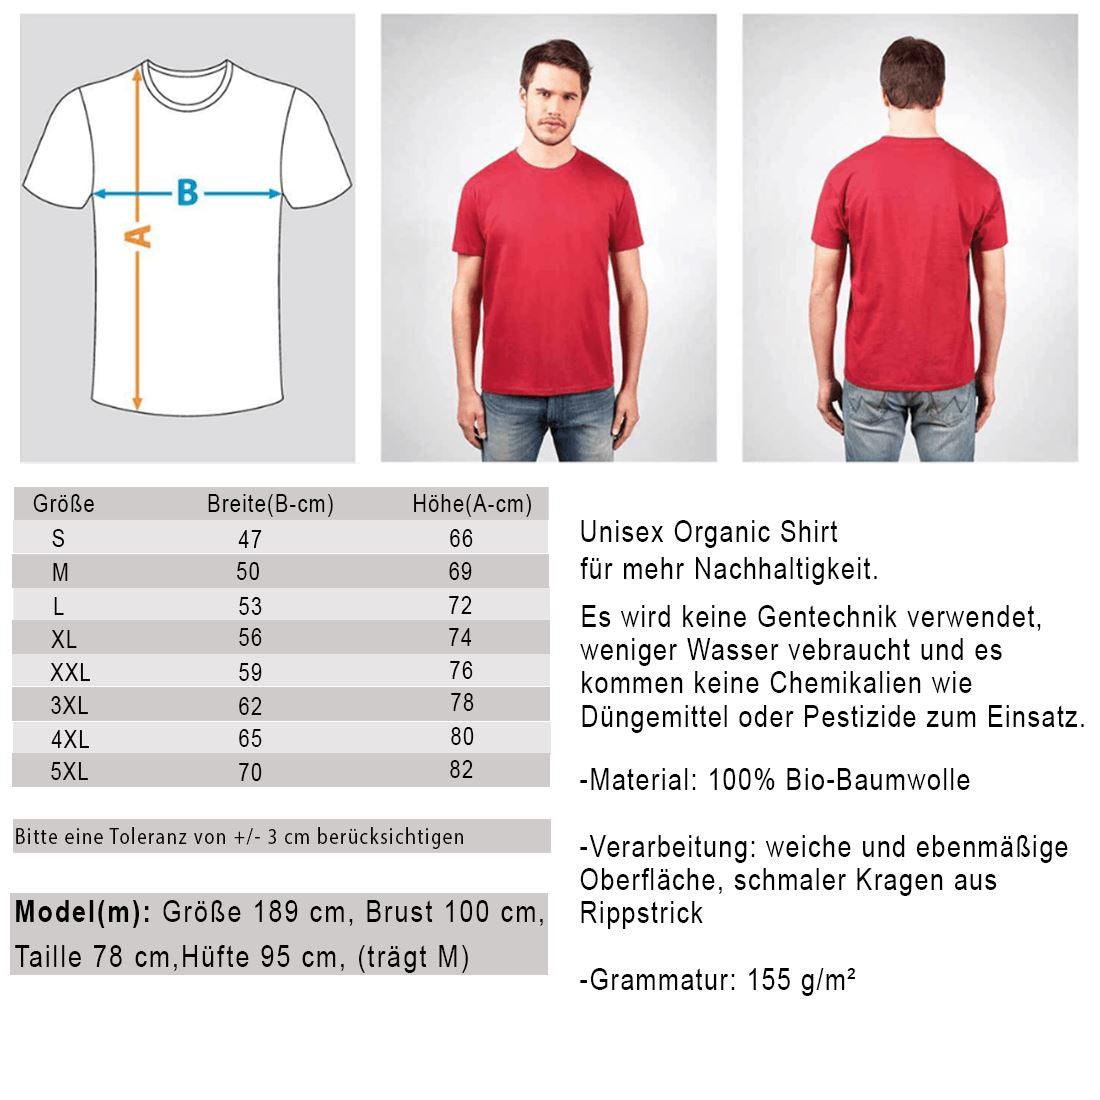 Not your Mom [Chantal Kaufmann] - Unisex Organic Shirt Rocker T-Shirt ST/ST Shirtee 